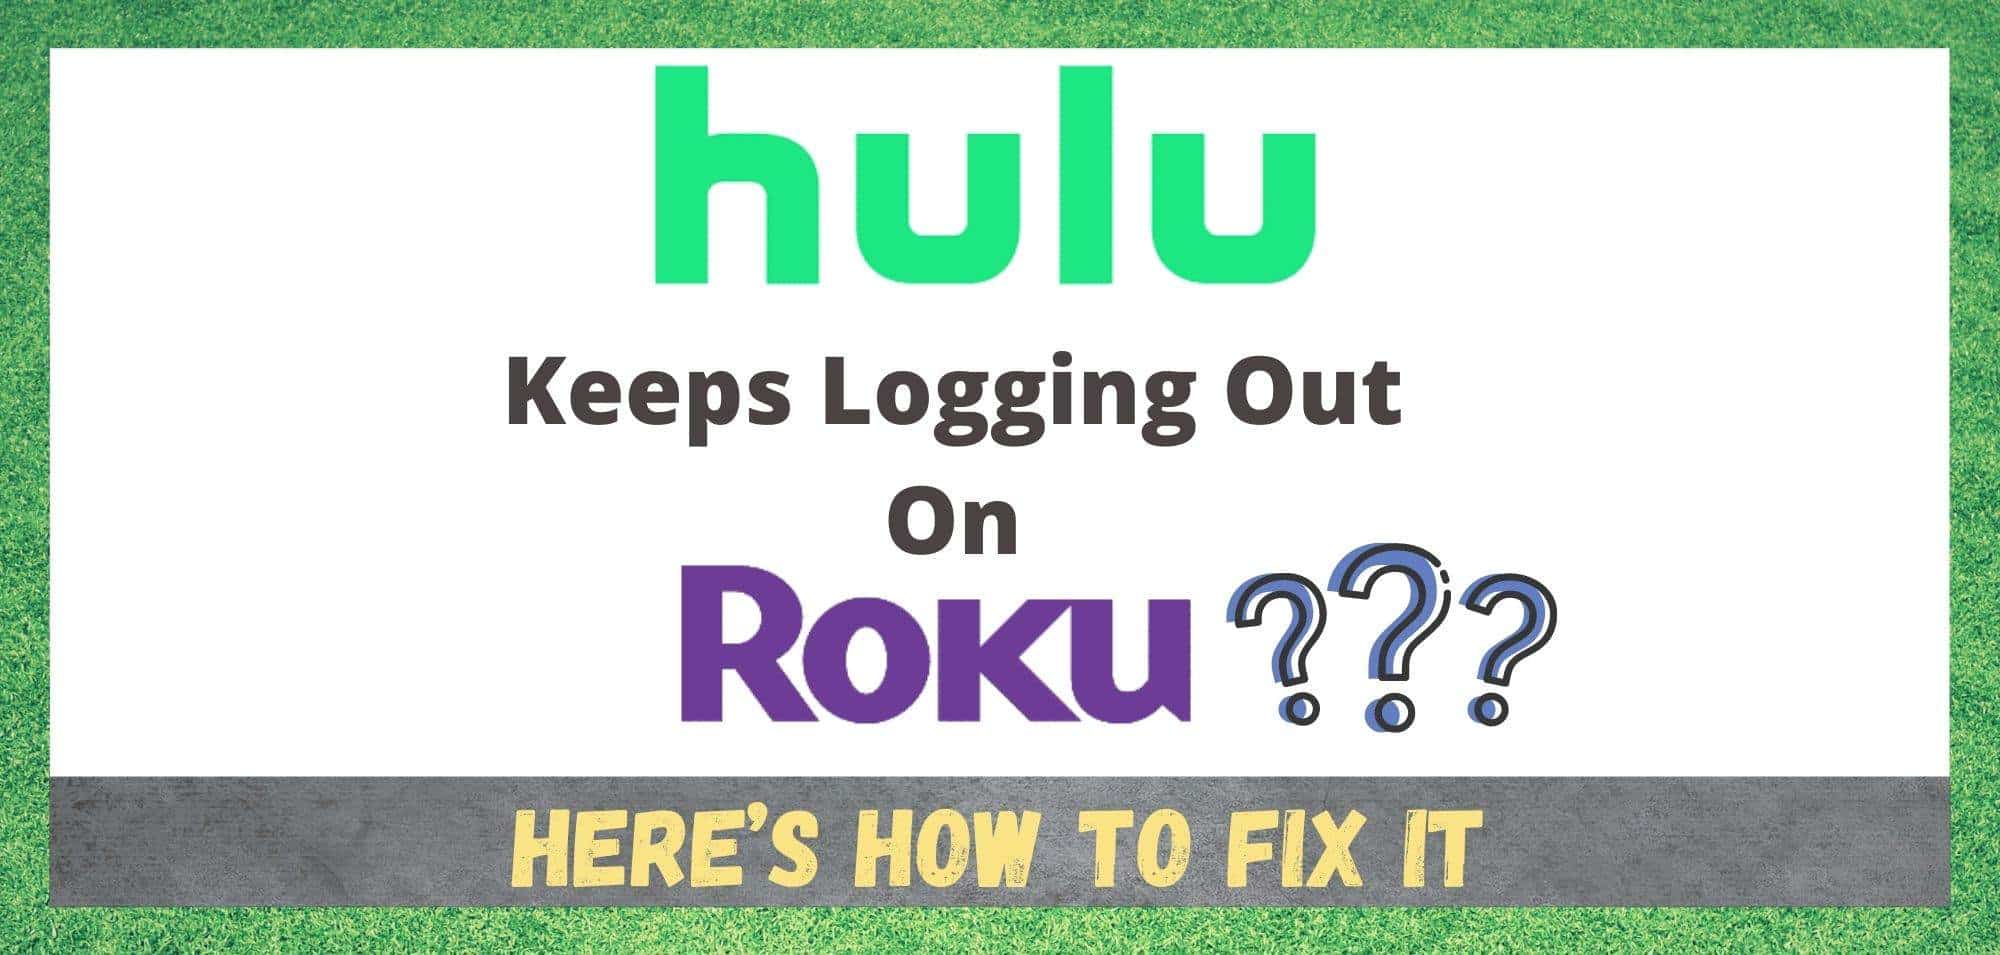 Hulu Roku-ээс гарсаар байна: Засах 2 арга